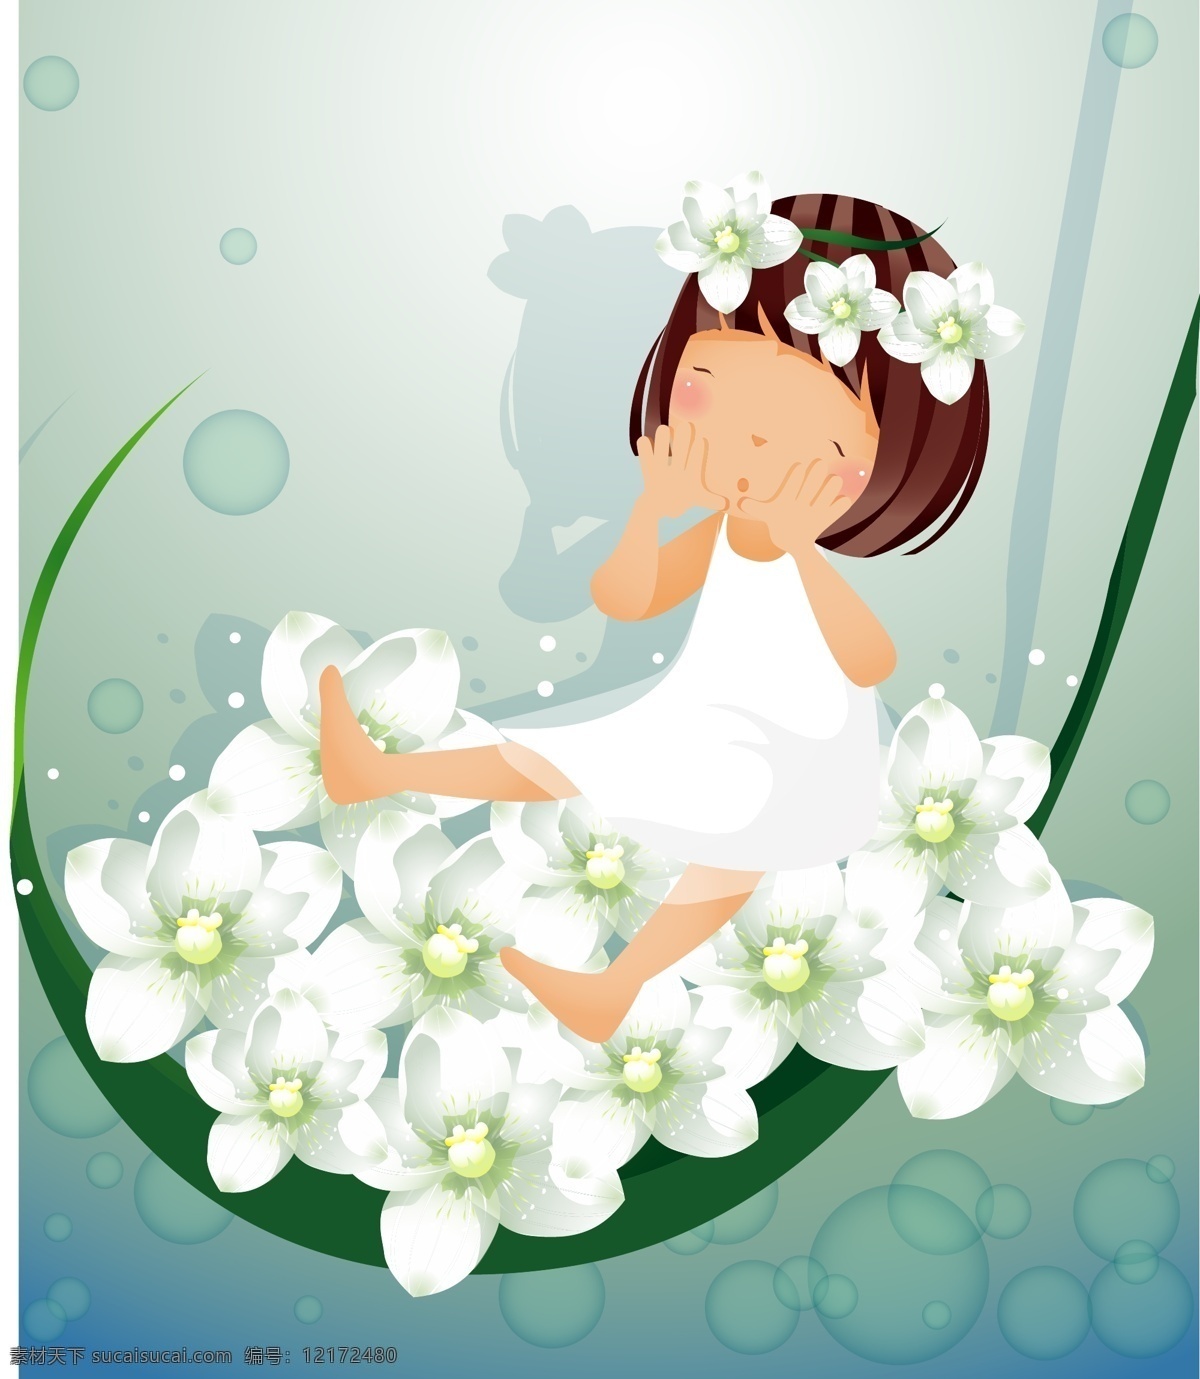 白色 花 主题 iclickart 四 赛季 韩国 可爱 女孩 相册 韩国矢量素材 夏季 叶 物质 载体